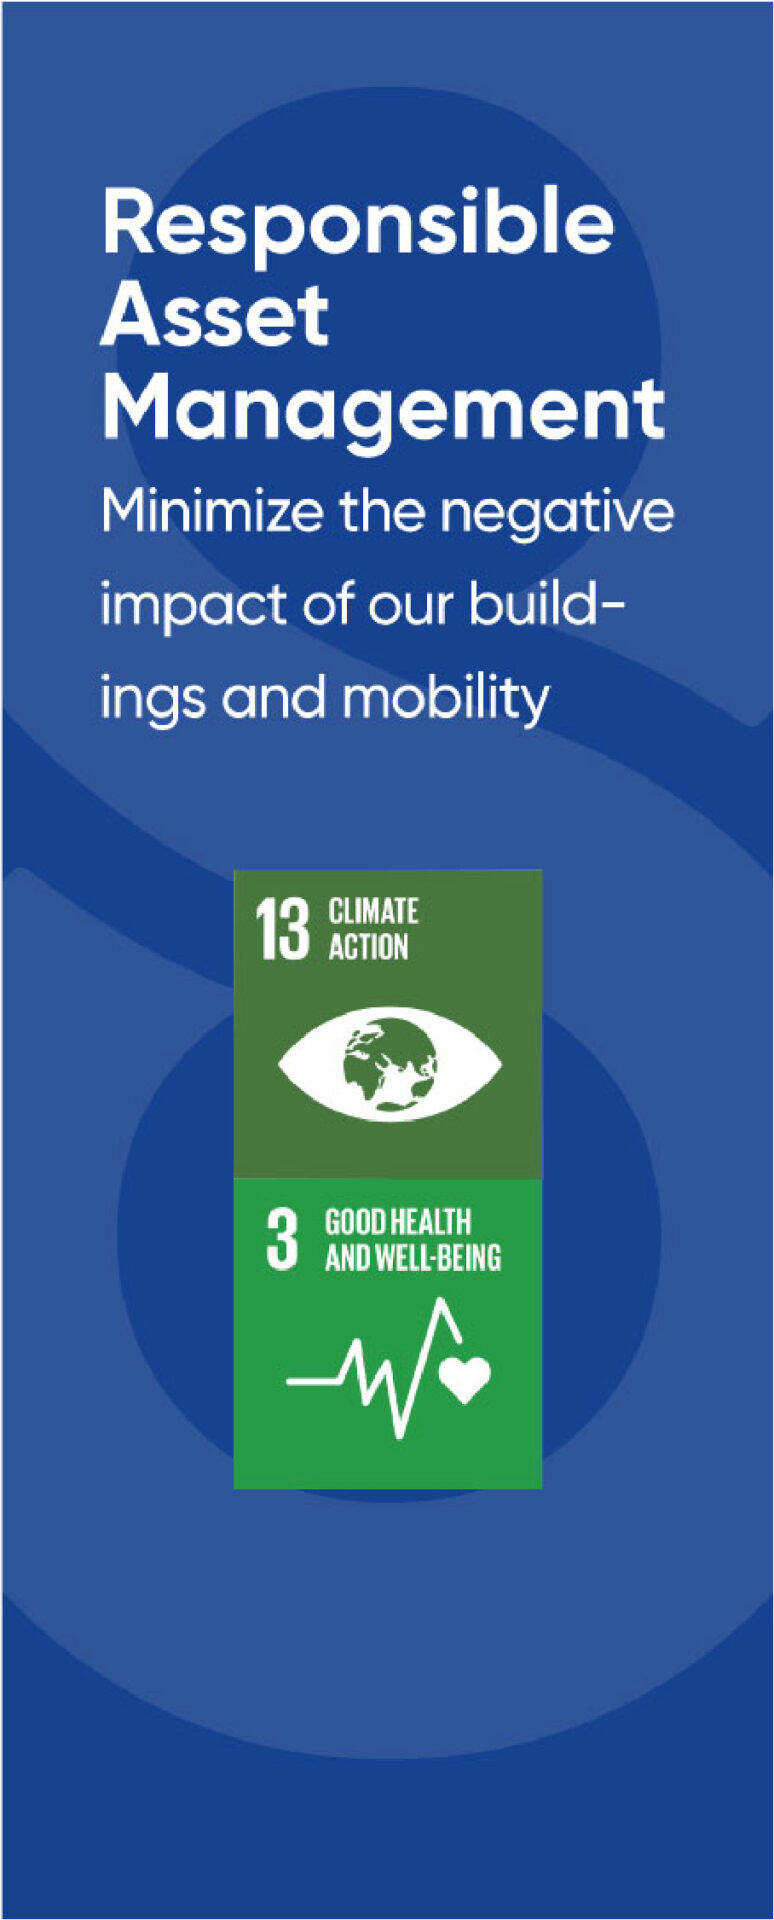 Symbolen van enkele duurzaamheidspijlers: Climate action, Good health and well-being.